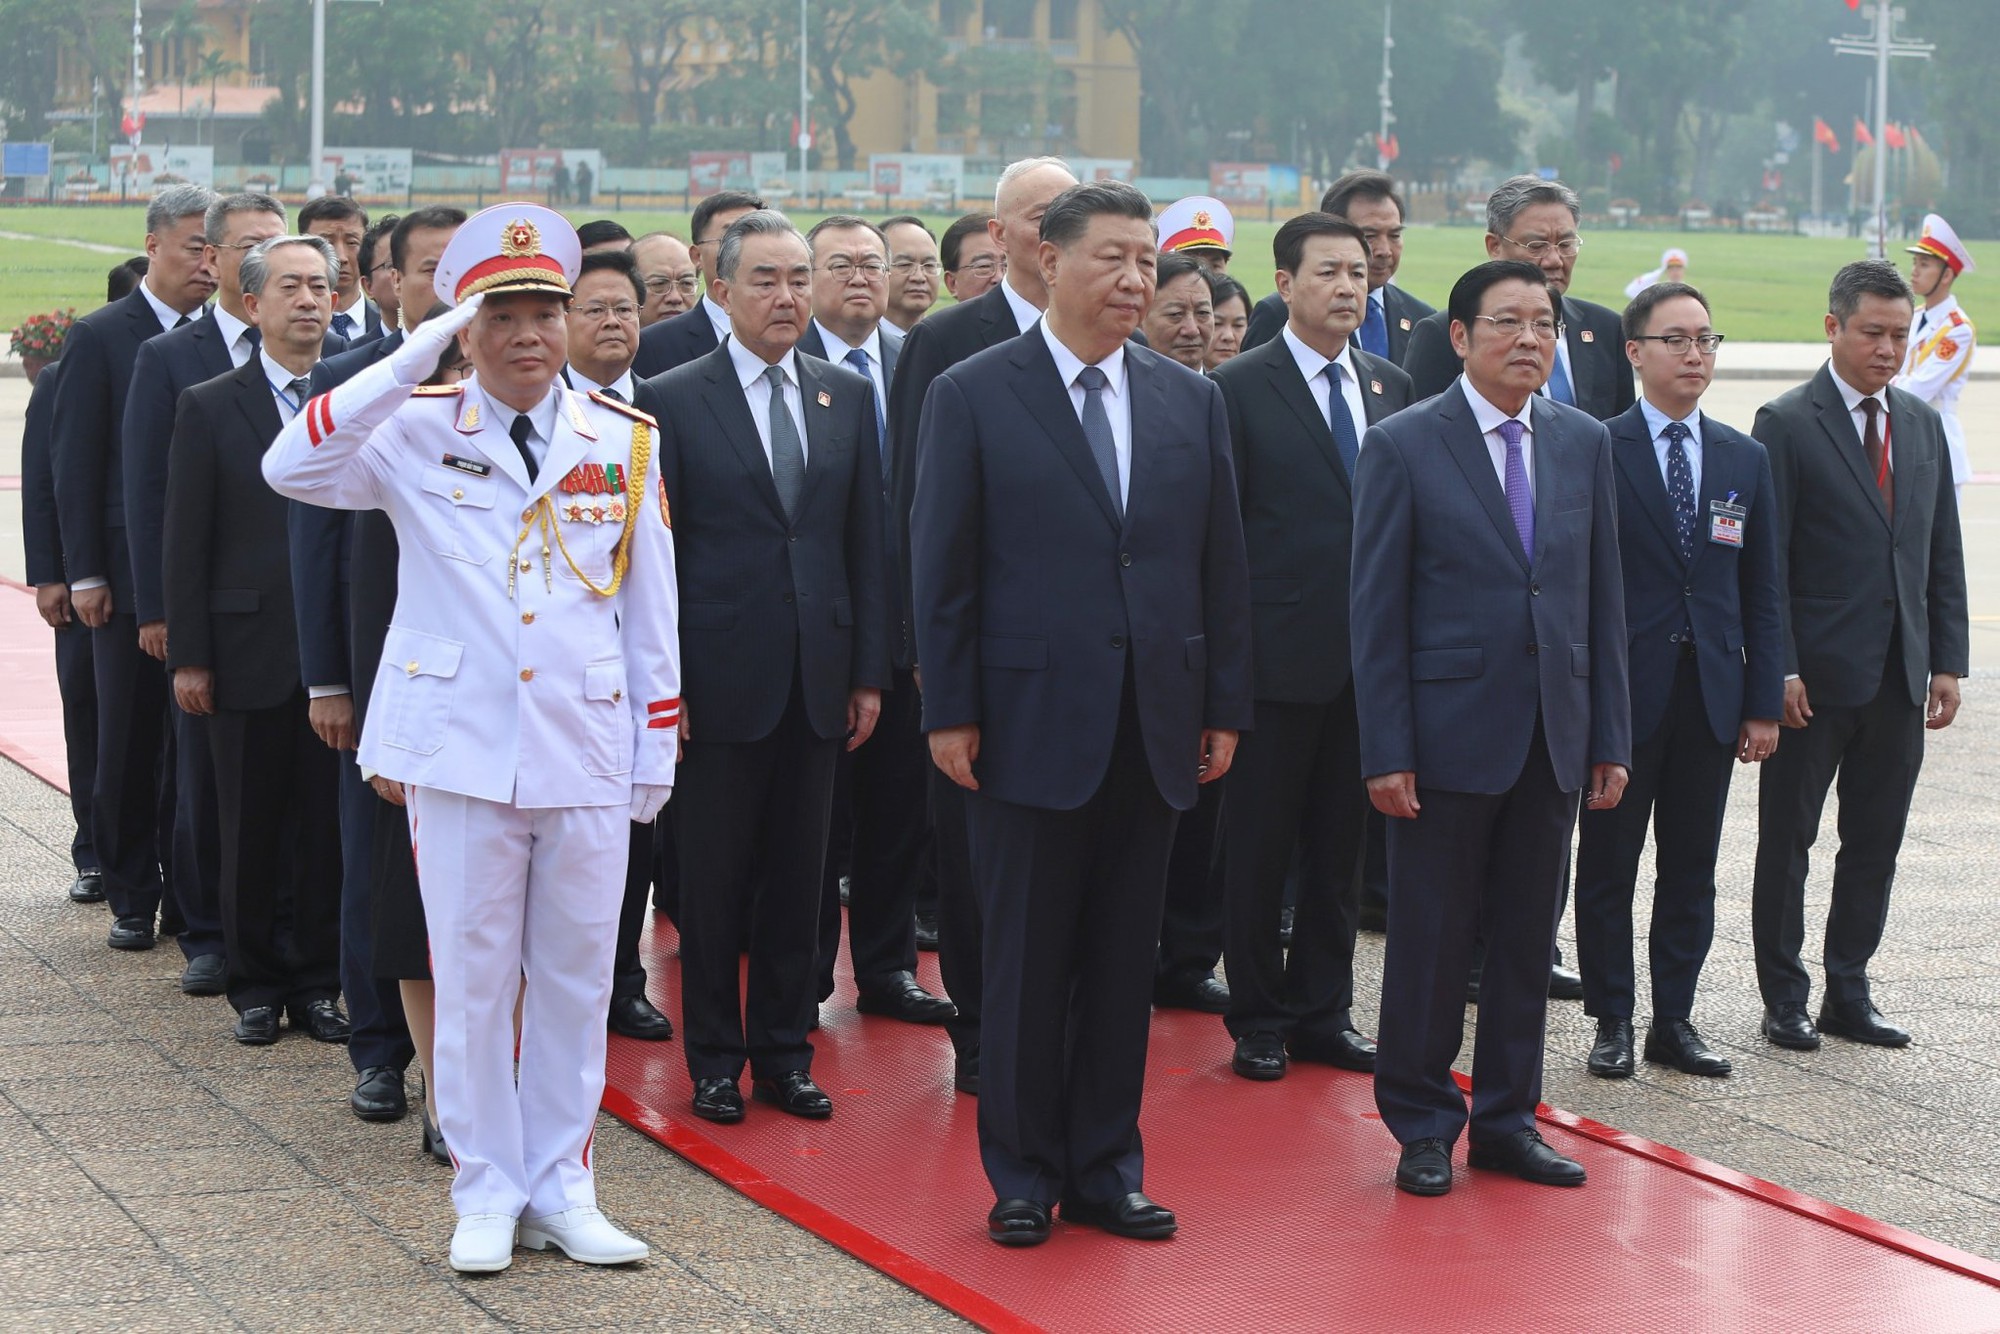 Tổng bí thư, Chủ tịch nước Trung Quốc Tập Cận Bình đặt vòng hoa viếng Chủ tịch Hồ Chí Minh - Ảnh 3.